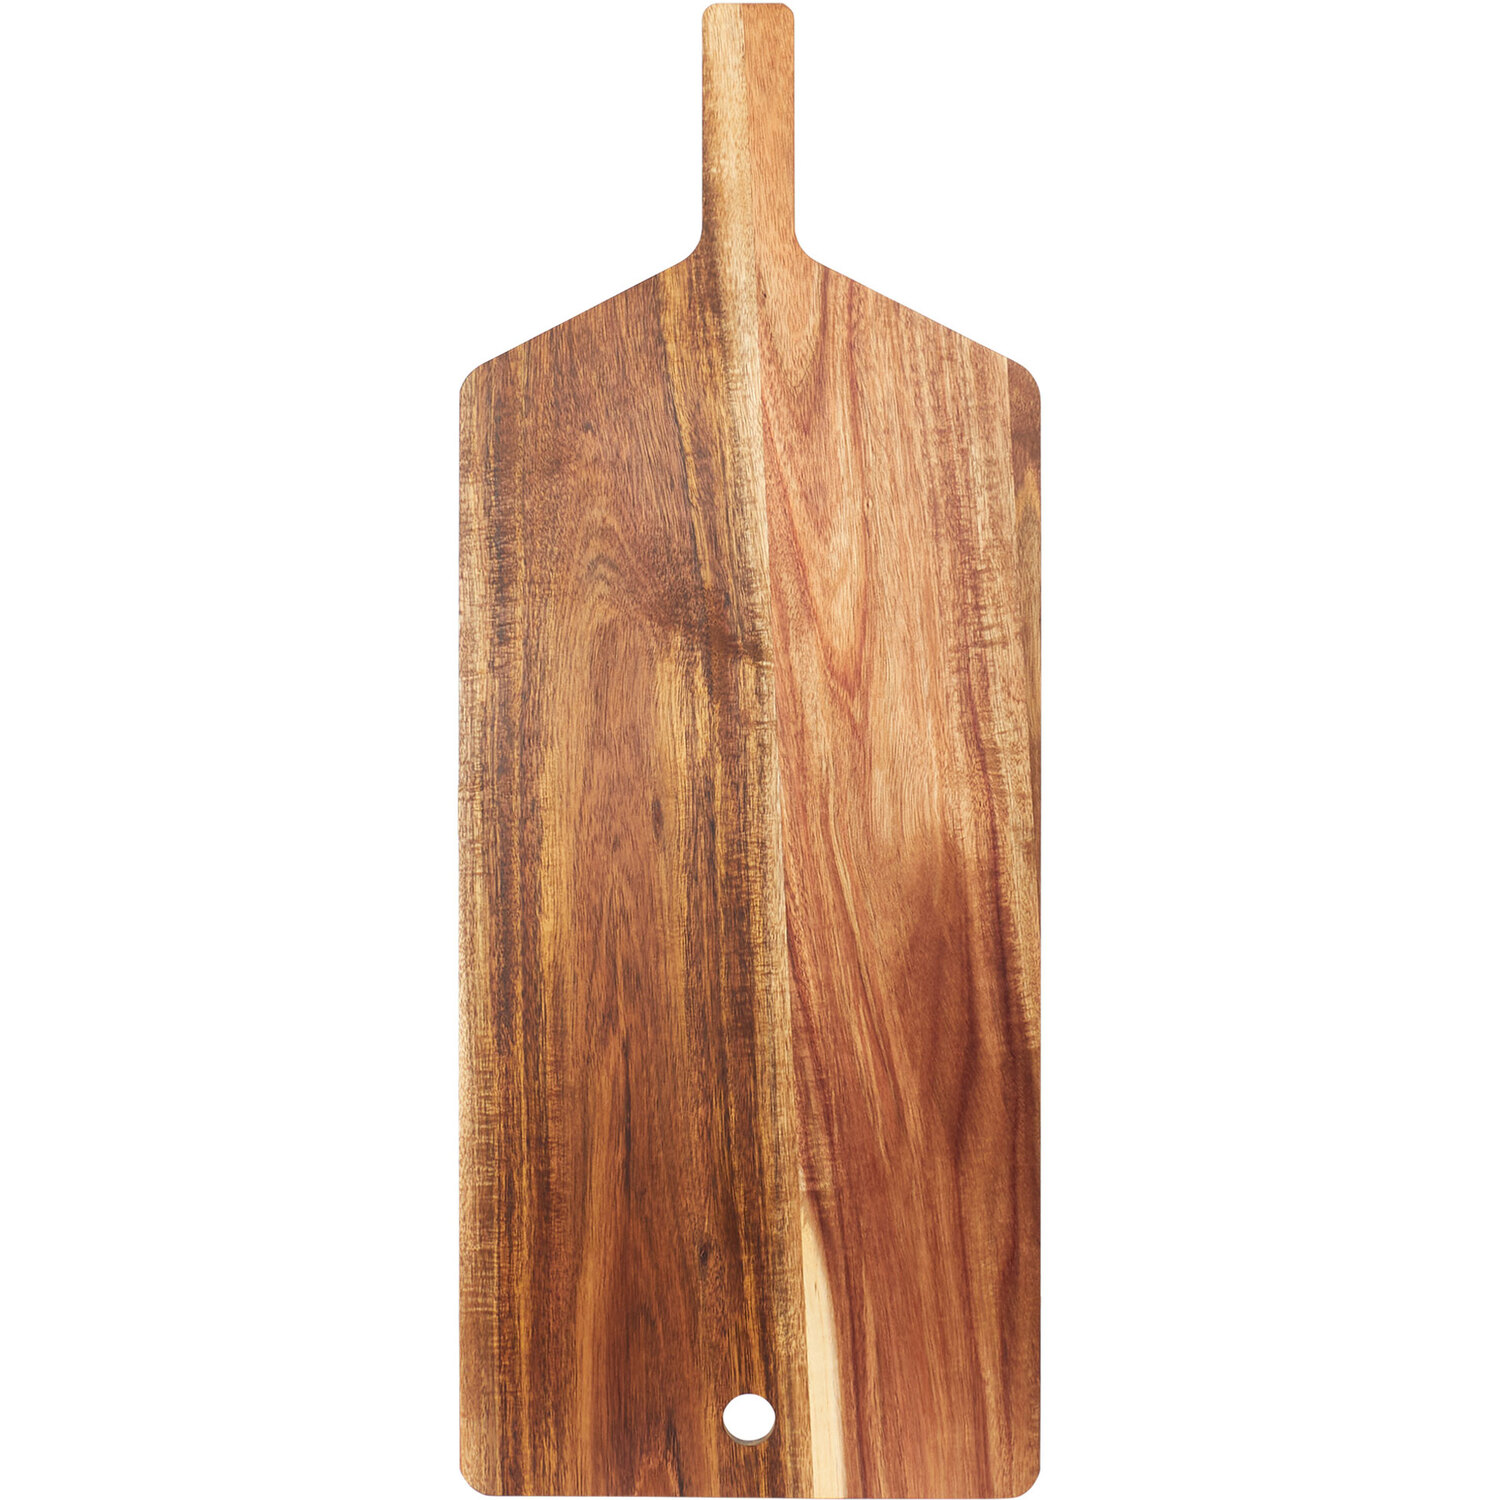 Acacia Handled Serving & Chopping Board - Natural Image 1